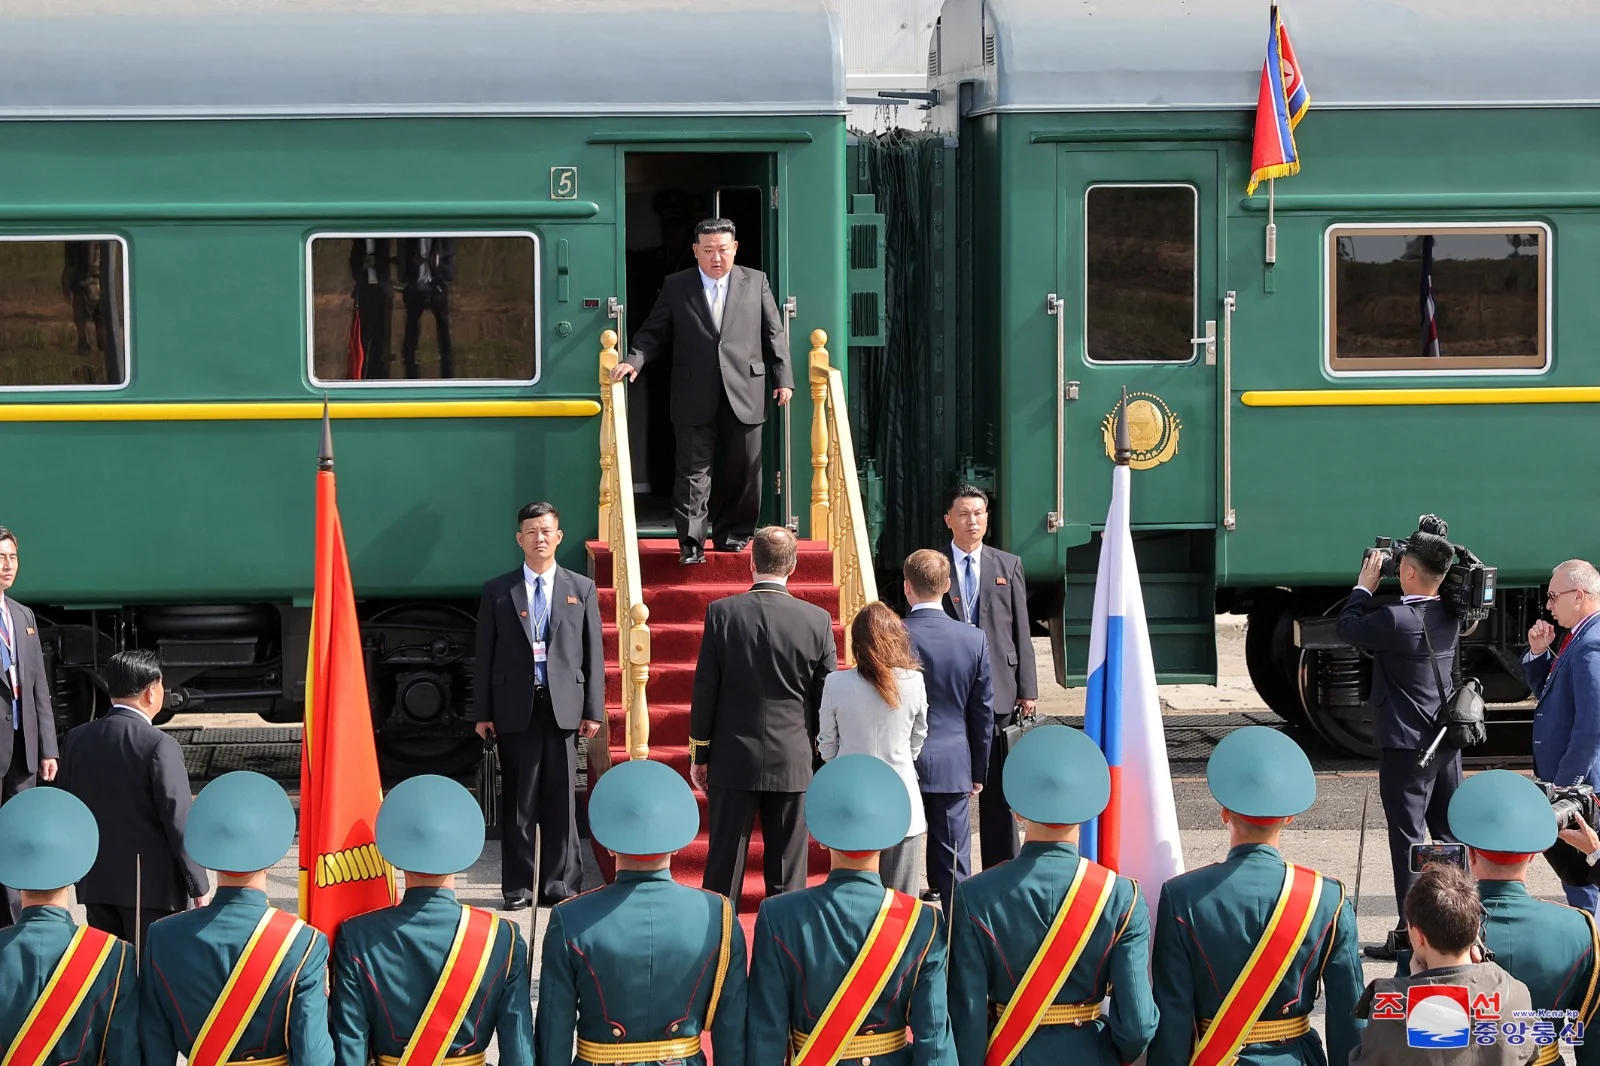 קים ג'ונג און יורד מהרכבת שלו במחוז אמור שבמזרח הרחוק הרוסי, לקראת פגישתו עם פוטין